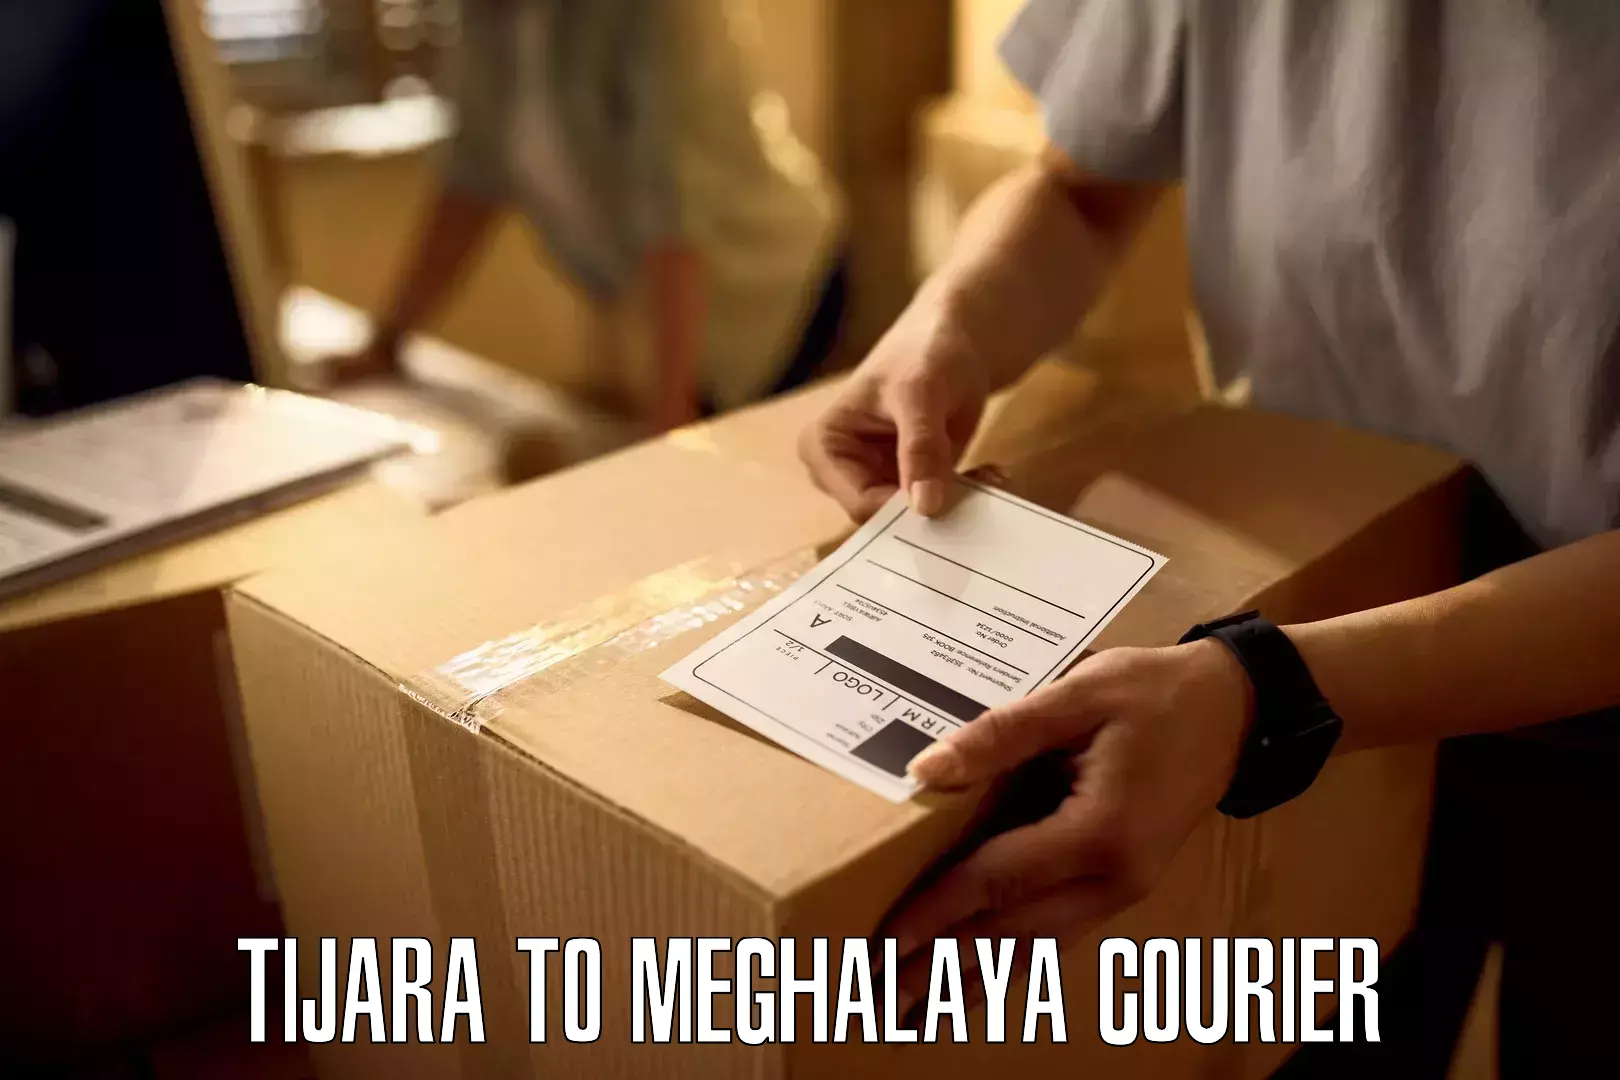 Global shipping solutions in Tijara to Meghalaya